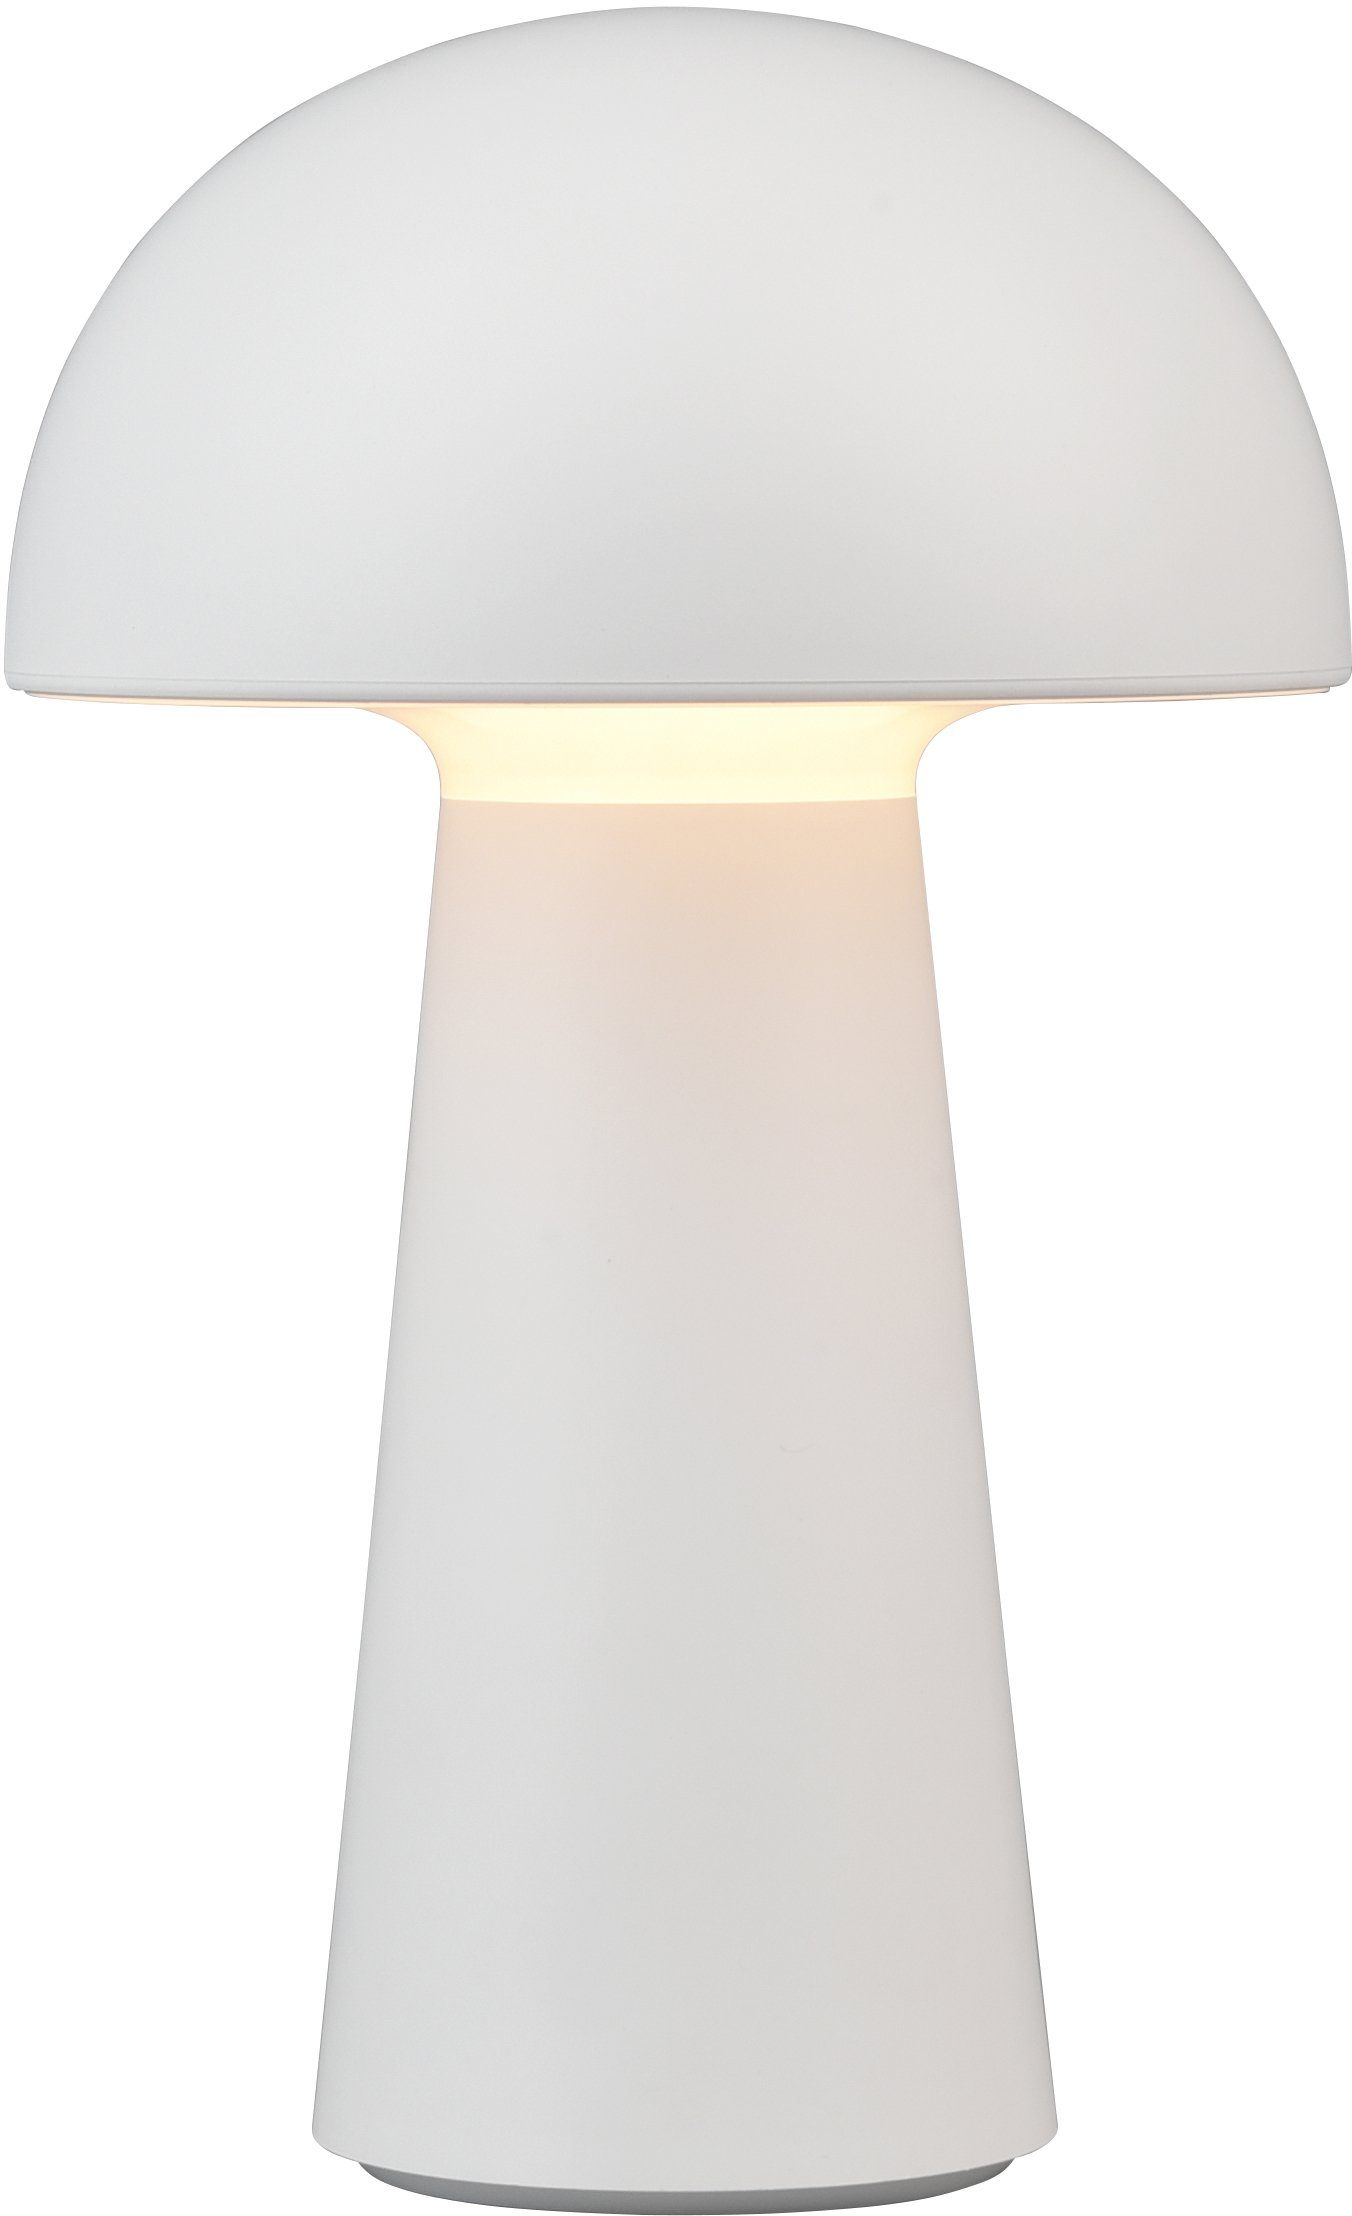 TRIO Leuchten LED Außen-Tischleuchte Lennon, Dimmfunktion, LED fest  integriert, Warmweiß, LED Outdoor Tischlampe, 4-fach Touchdimmer, Ladefunktion  per USB, IP44, mobile Nutzung, vielseitig einsetzbar für drinnen und draußen